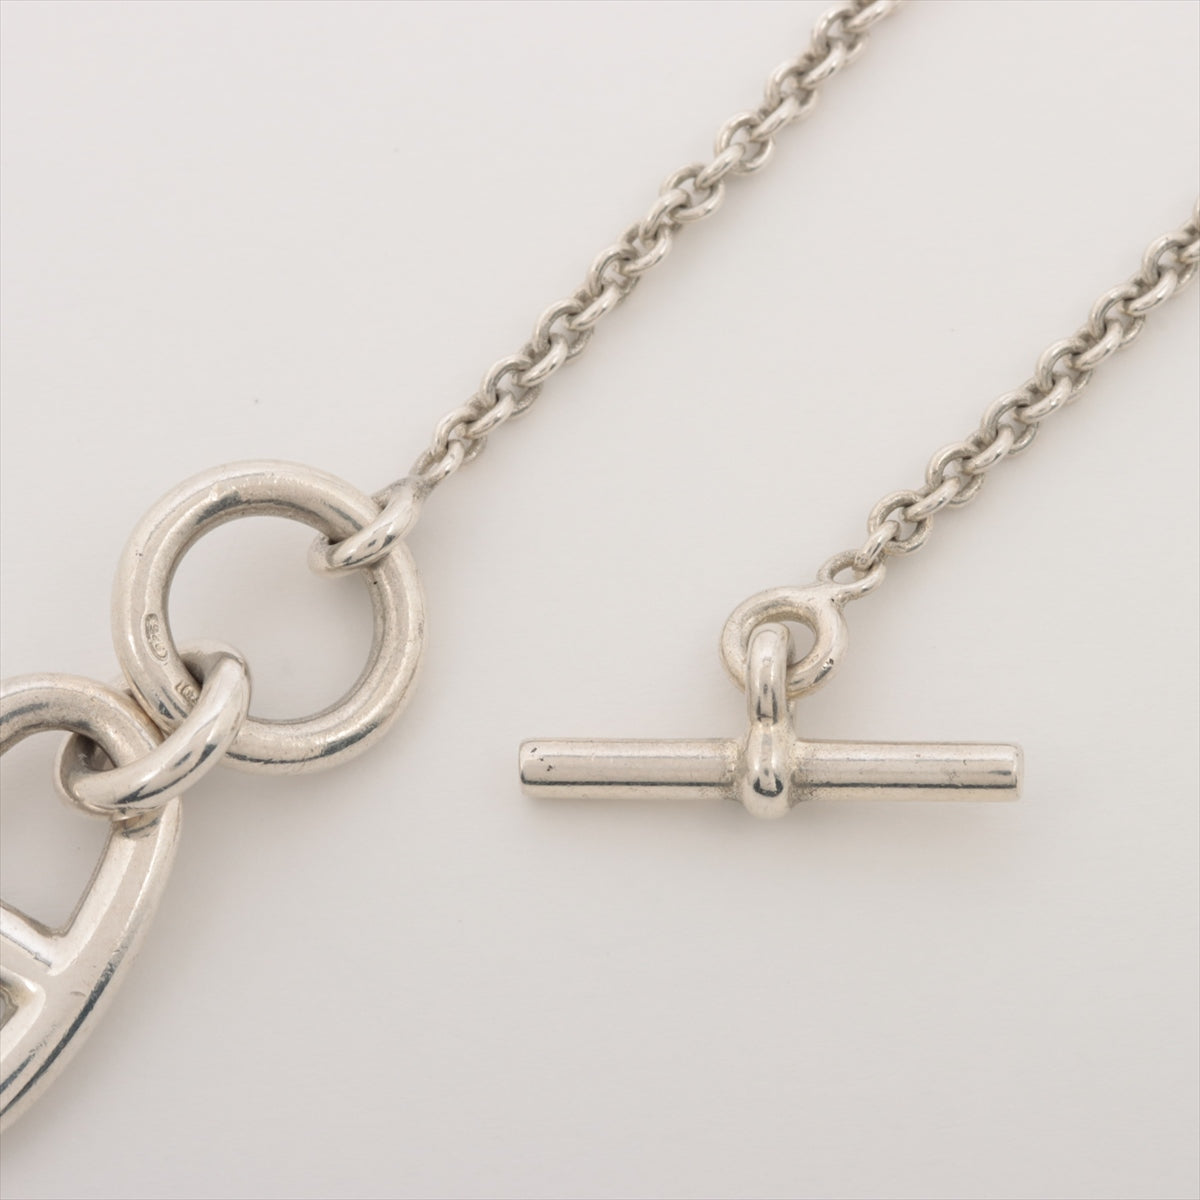 Hermès Chaîne d'Ancre Amulet Necklace 925 9.3g Silver